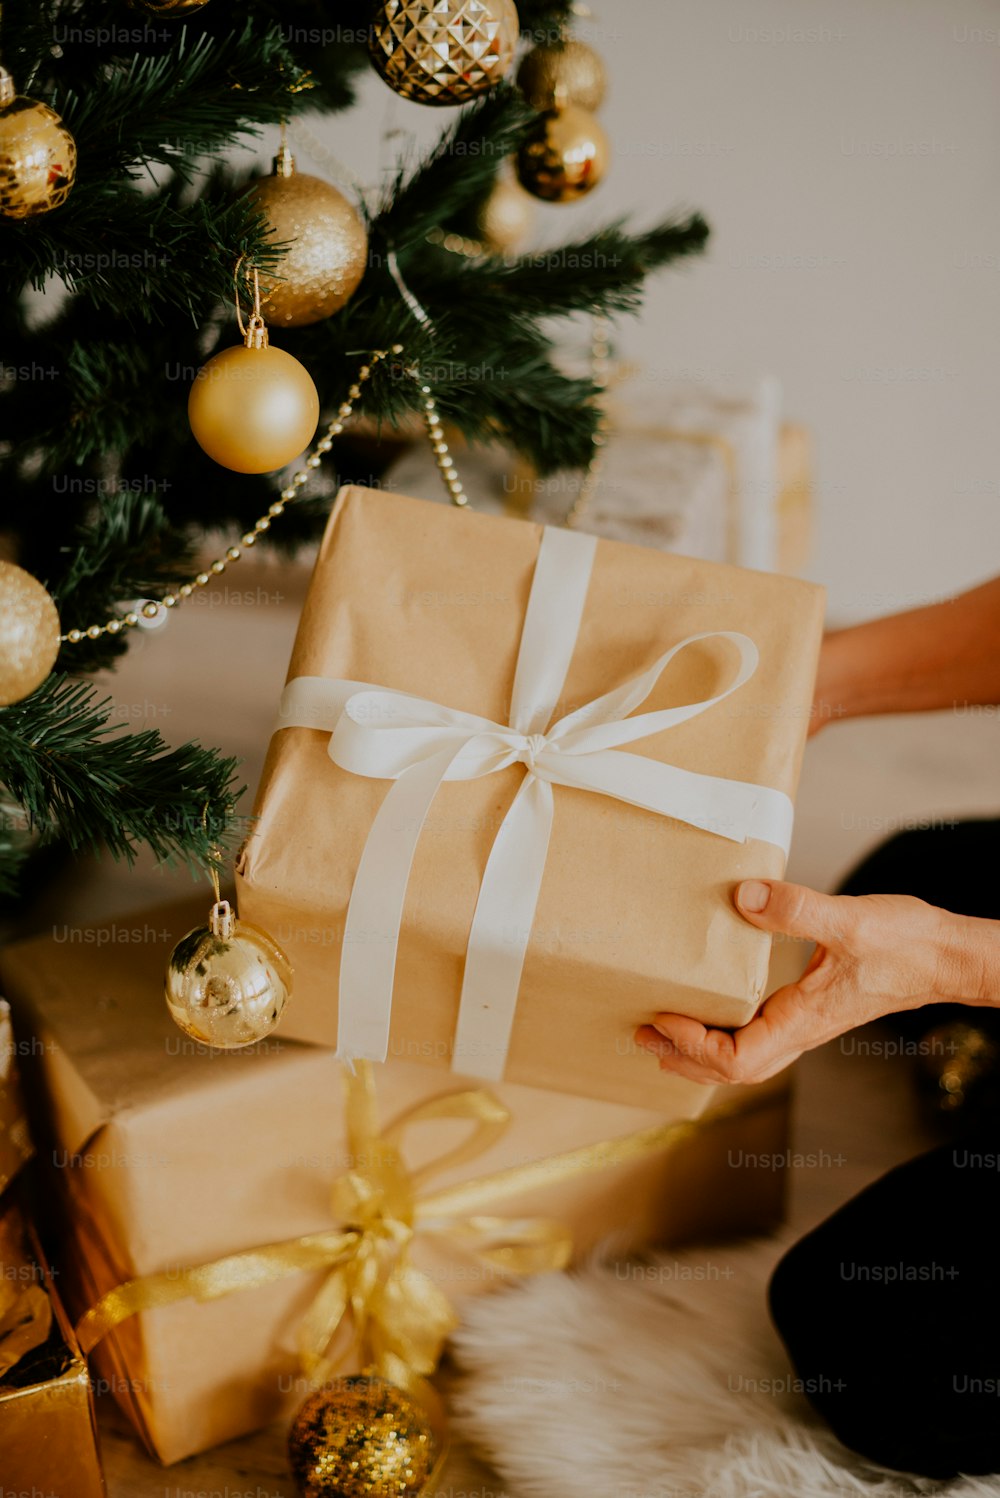 Una persona sosteniendo un regalo envuelto cerca de un árbol de Navidad